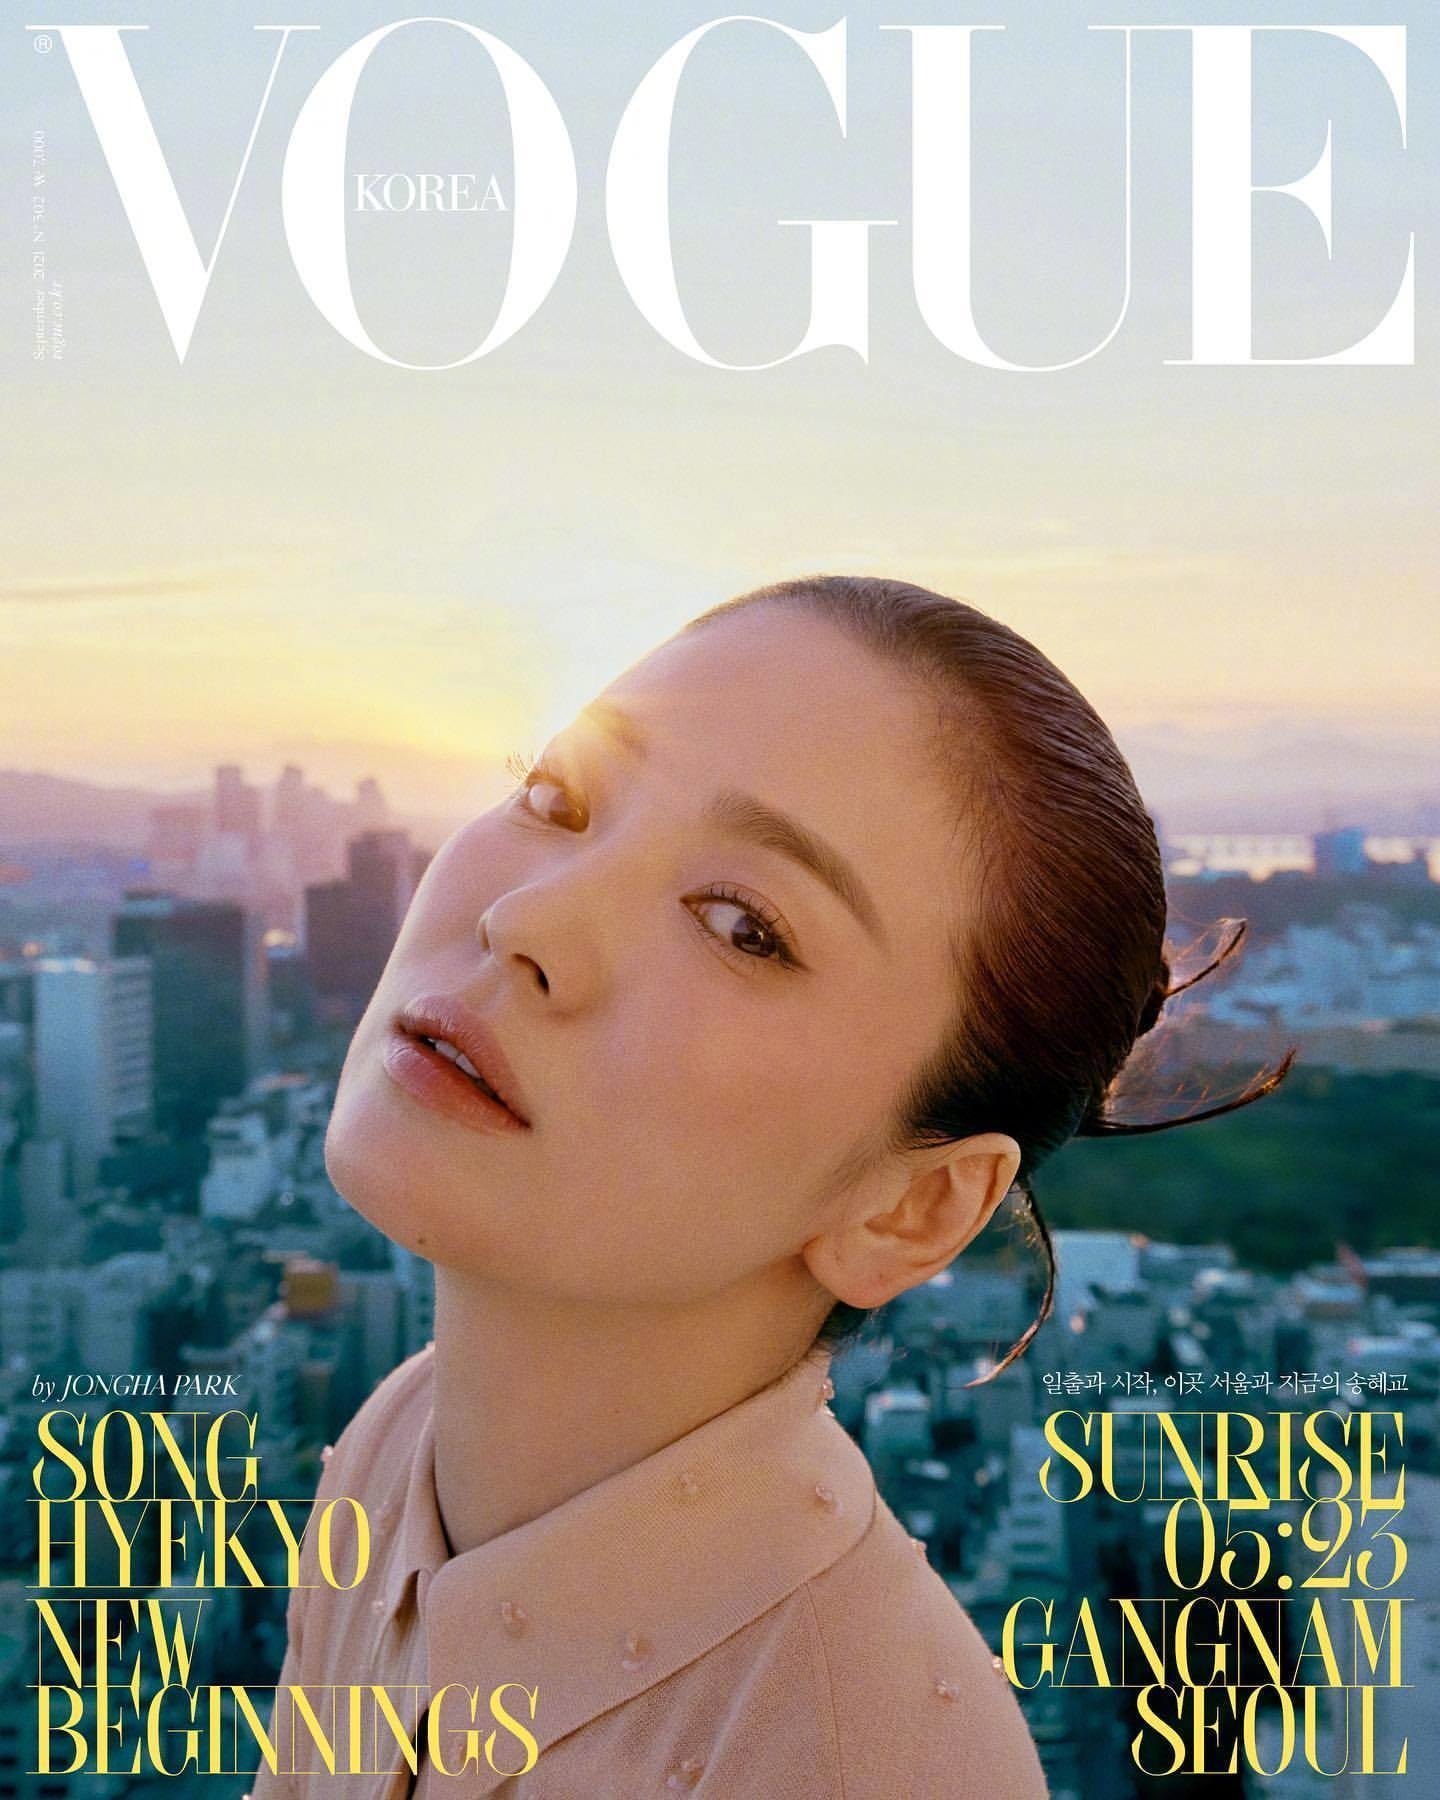 Vogue's Covers: Vogue Korea